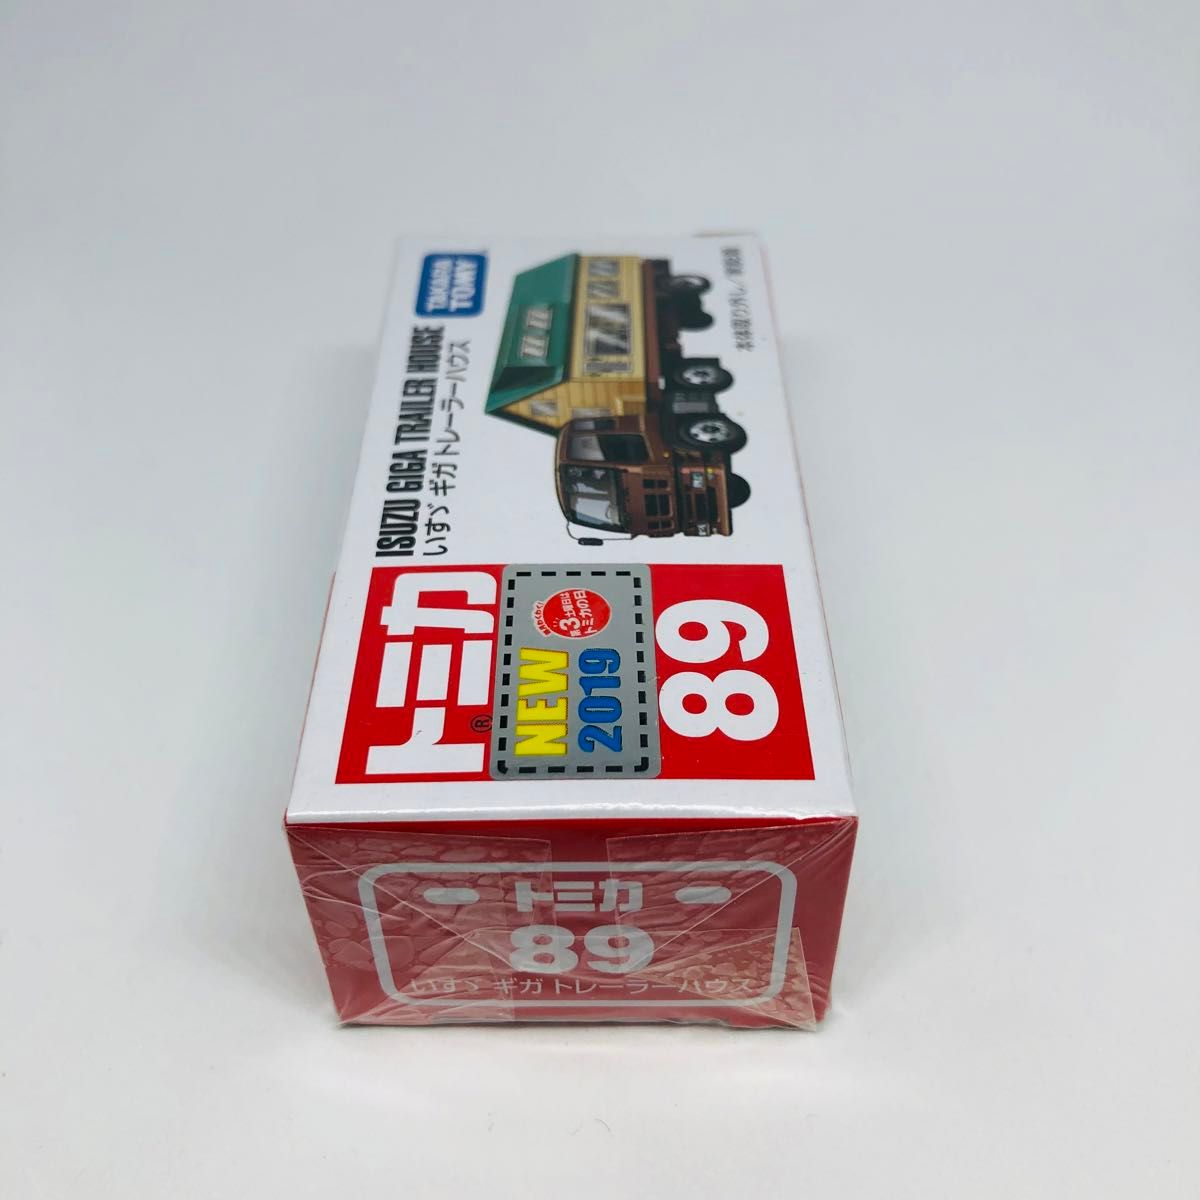 『未開封』トミカ No.89 いすゞ ギガ トレーラーハウス 廃盤品　絶版　新車シール